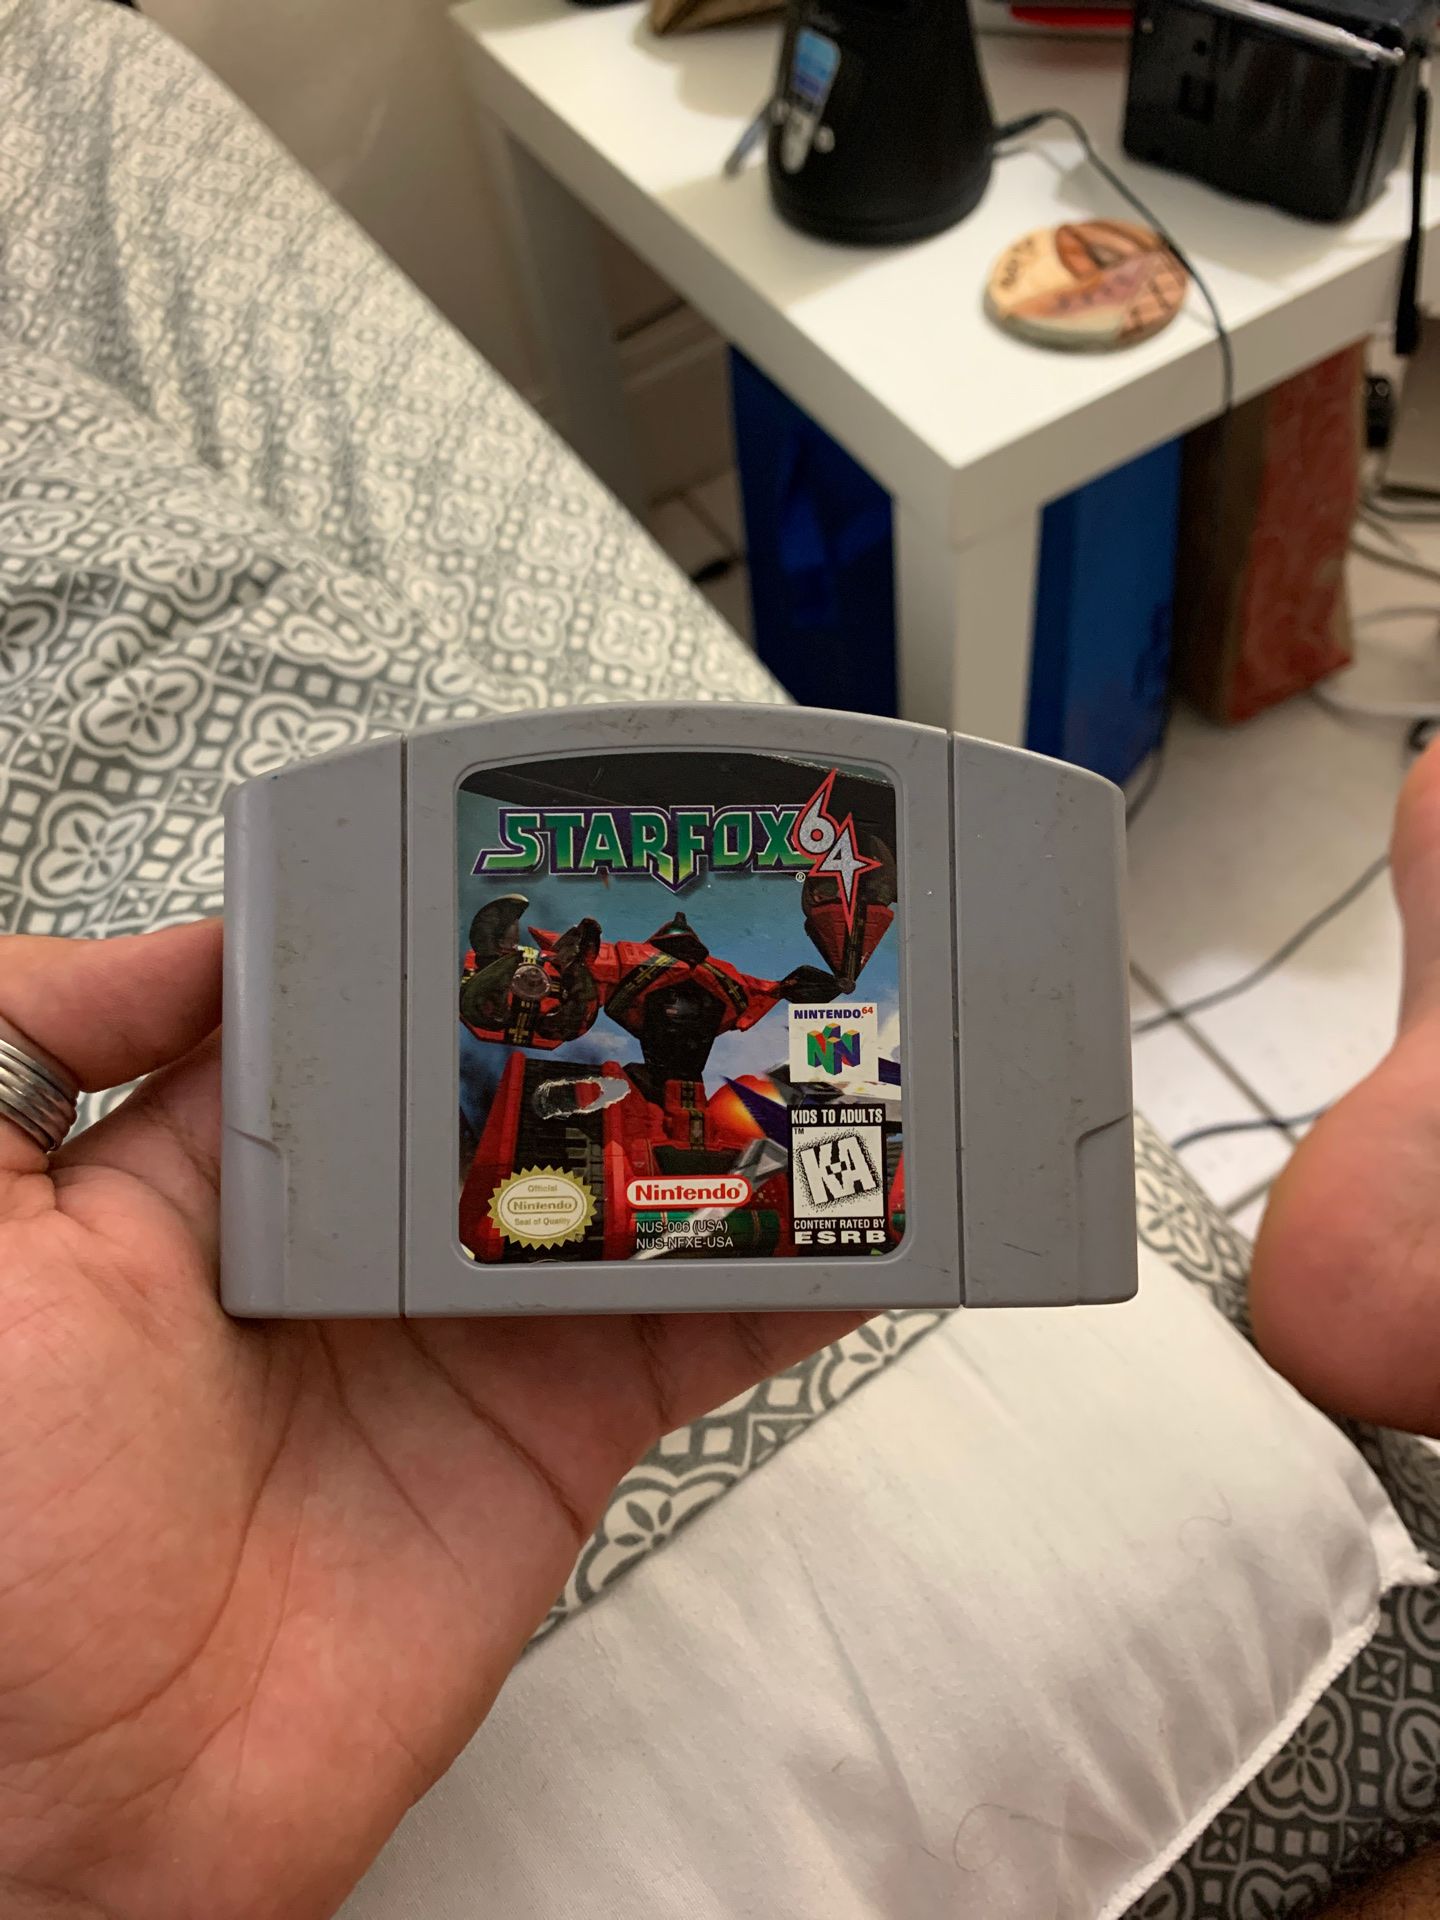 Nintendo 64 Starfox 64 game